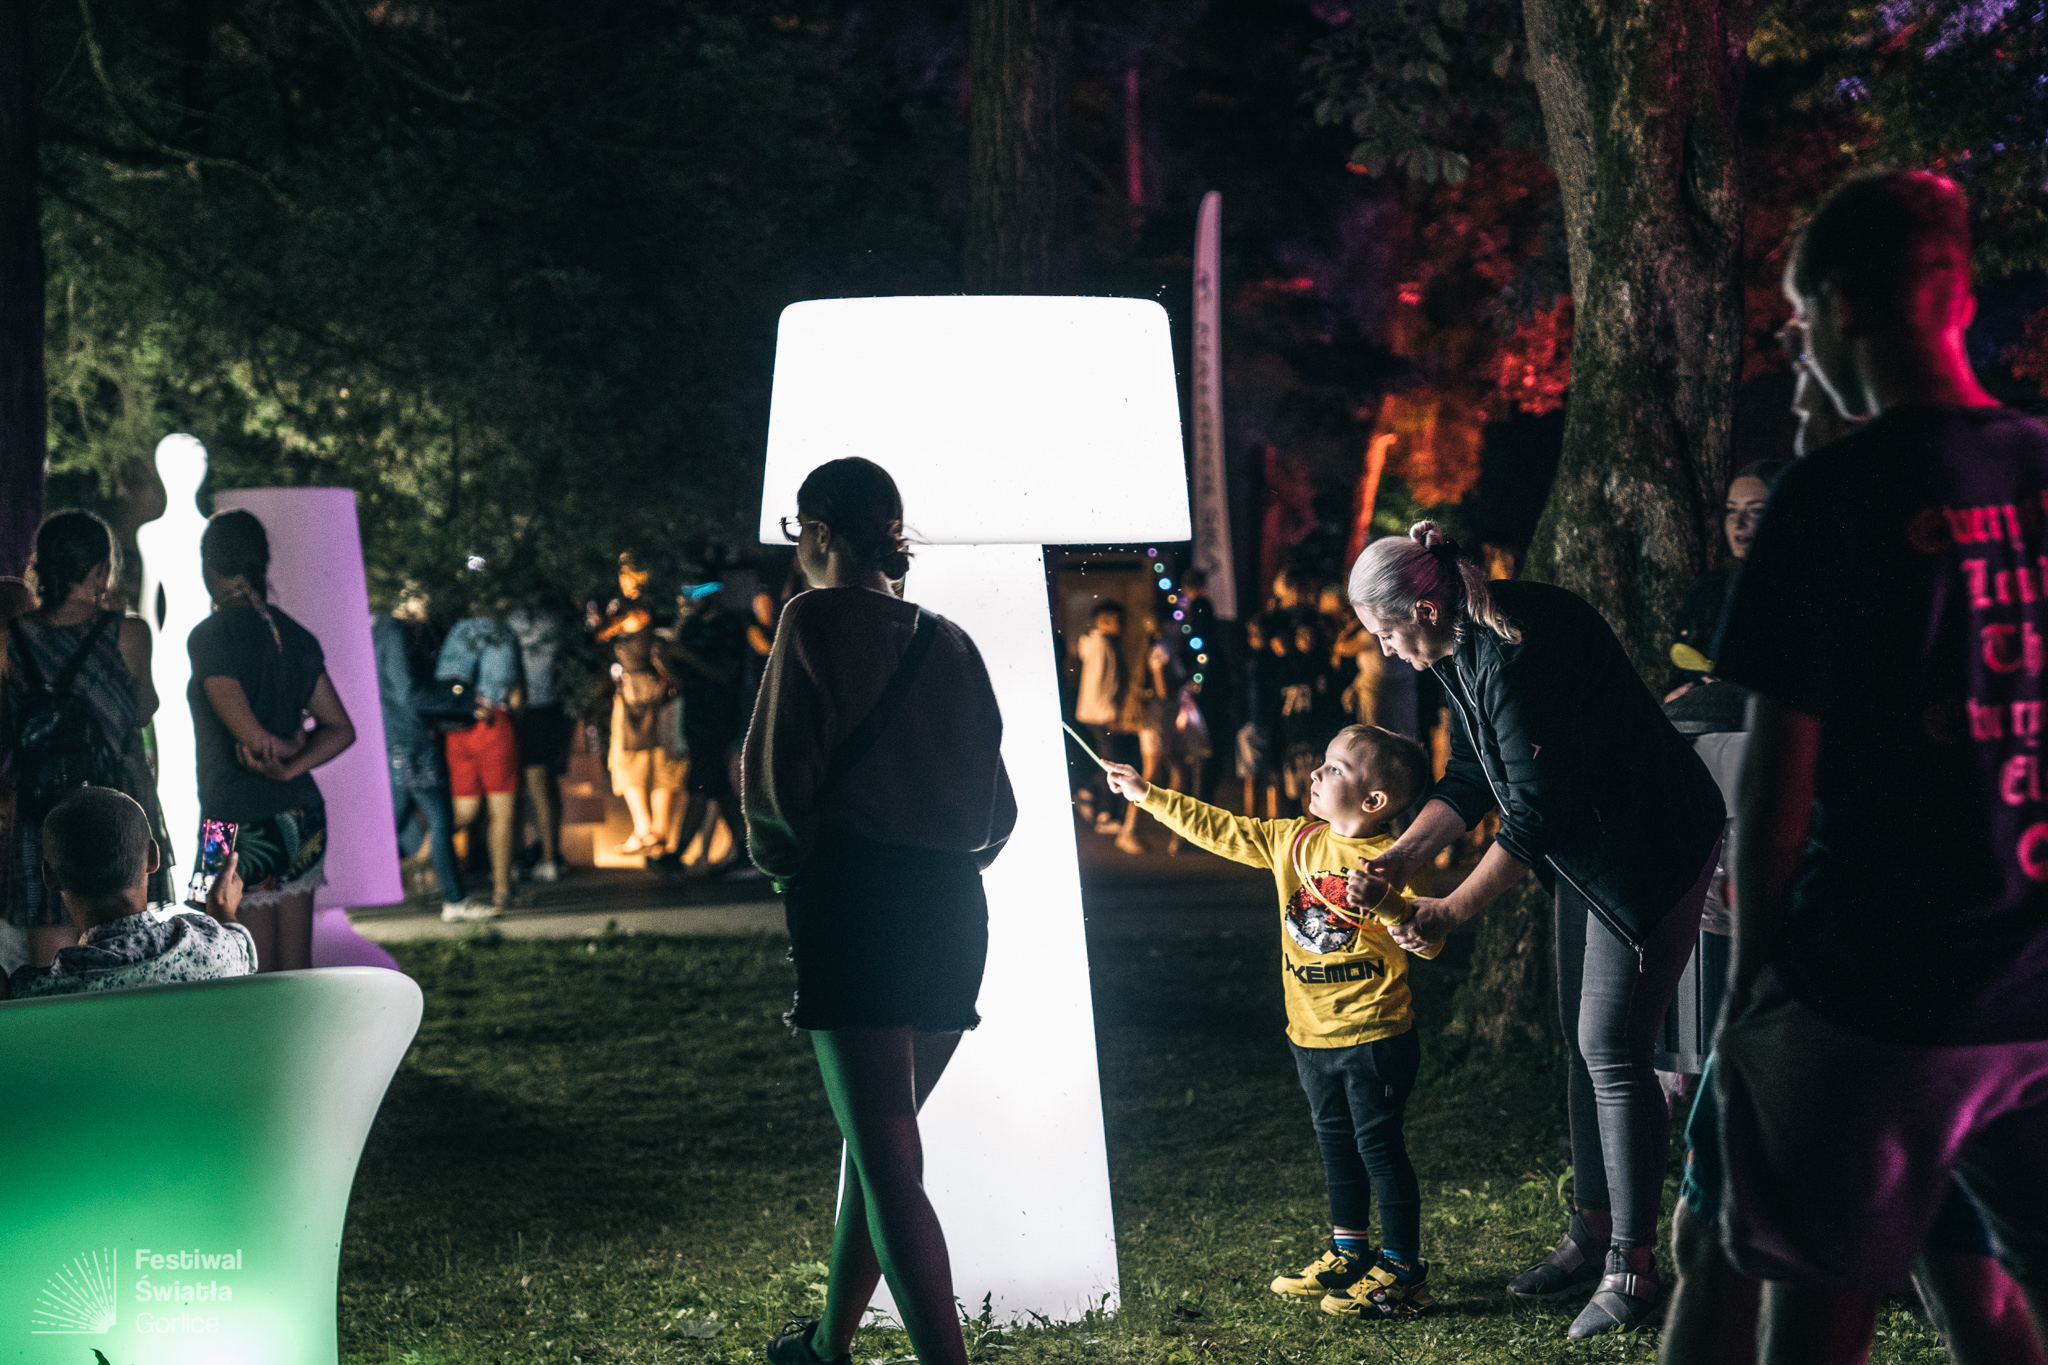 świetlne meble w alei światła podczas Festiwalu Światła w Gorlicach